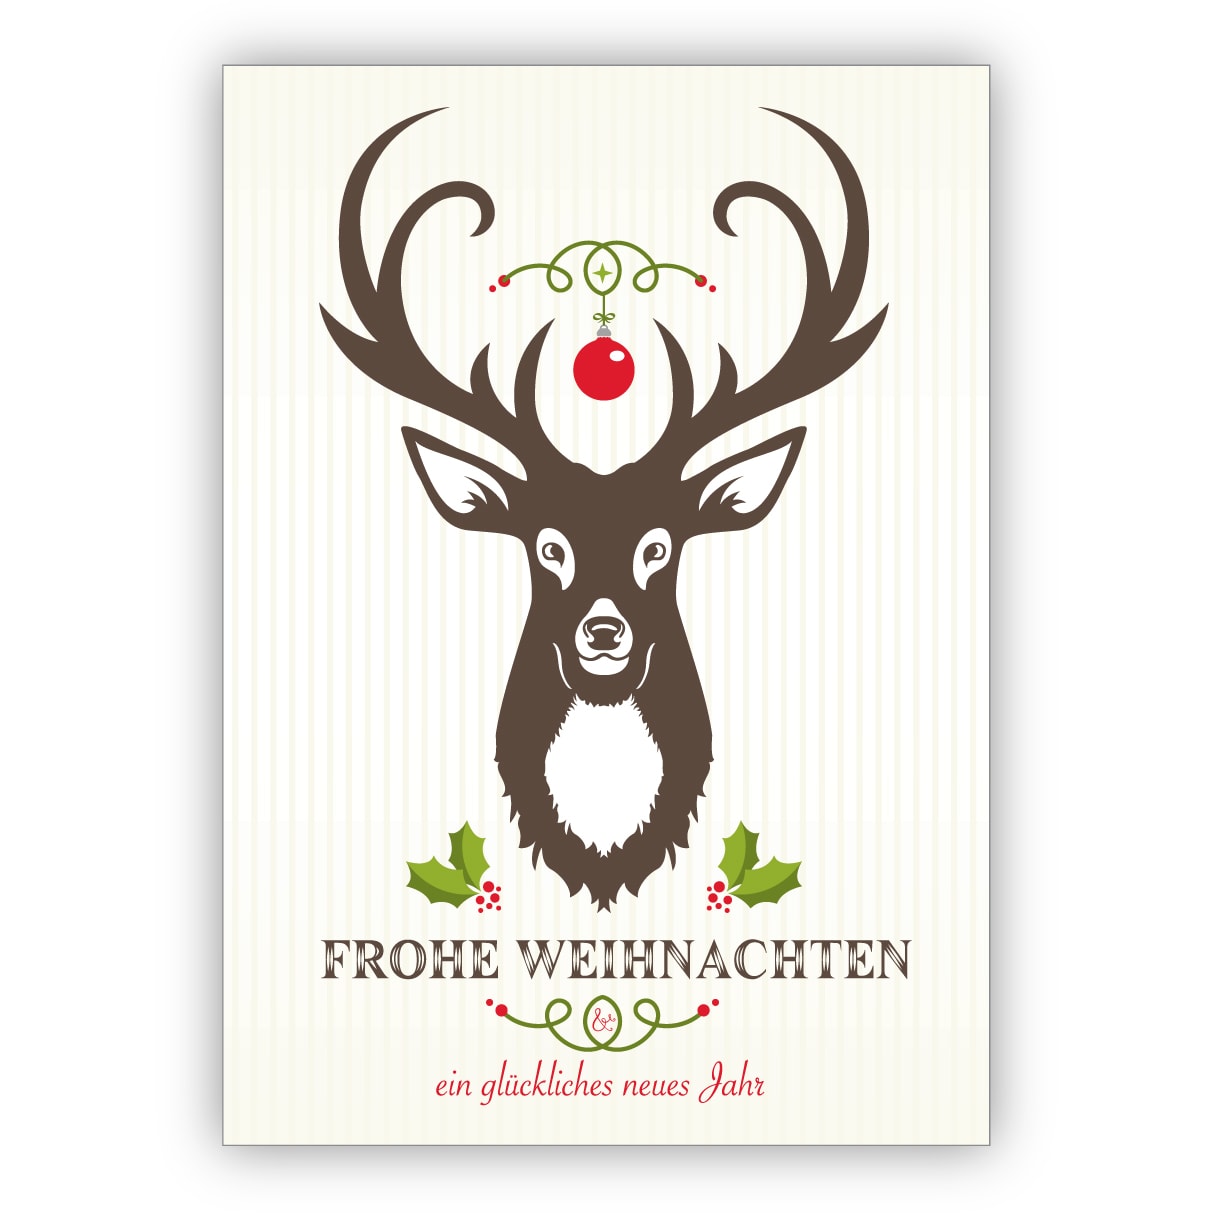 Klassische Weihnachtskarte mit Hirsch und Ornamenten auf feinen Streifen: Frohe Weihnachten und ein glückliches neues Jahr